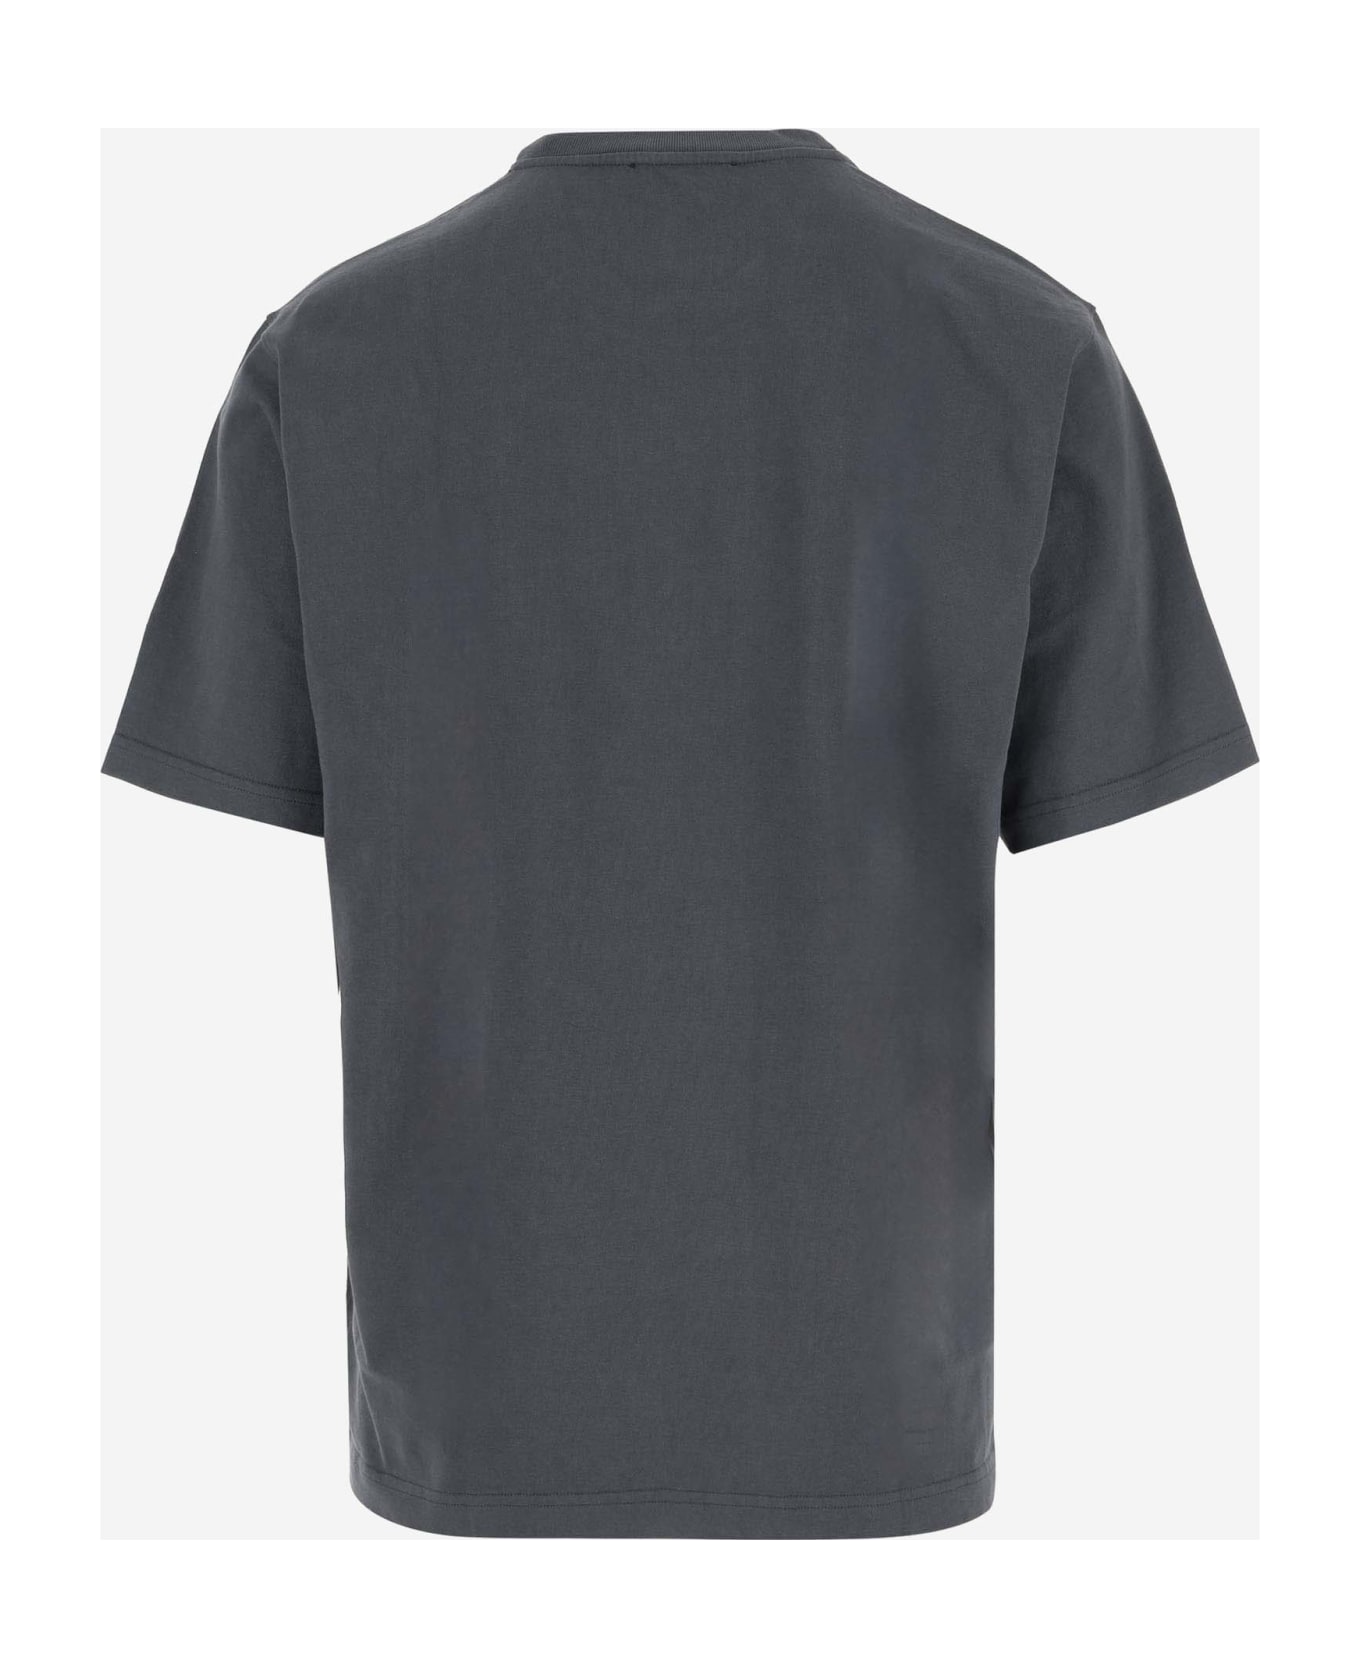 Dolce & Gabbana Cotton T-shirt With Logo - Grey